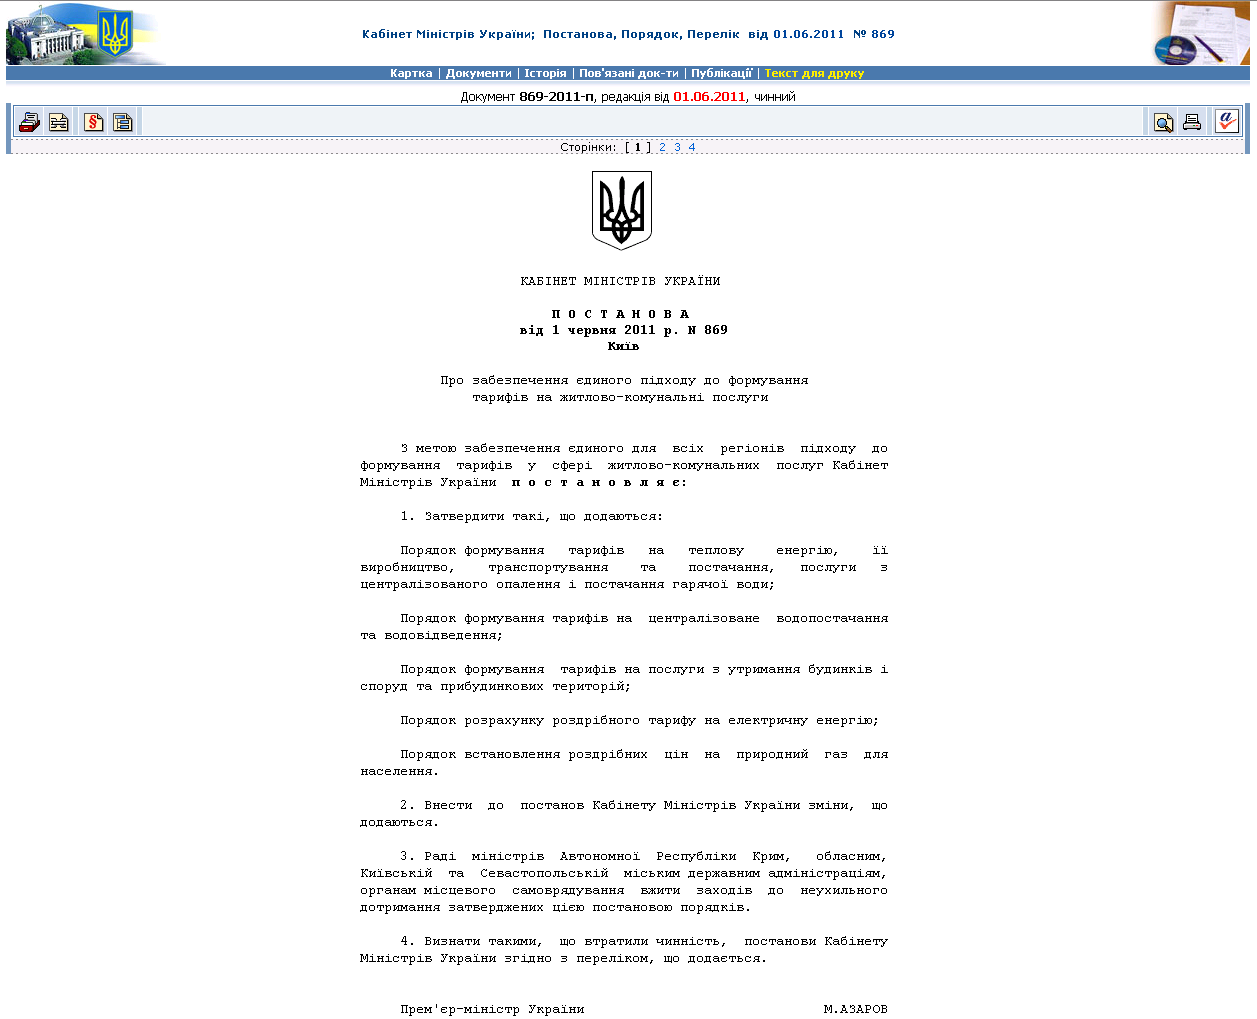 http://zakon.rada.gov.ua/cgi-bin/laws/main.cgi?nreg=869-2011-%EF